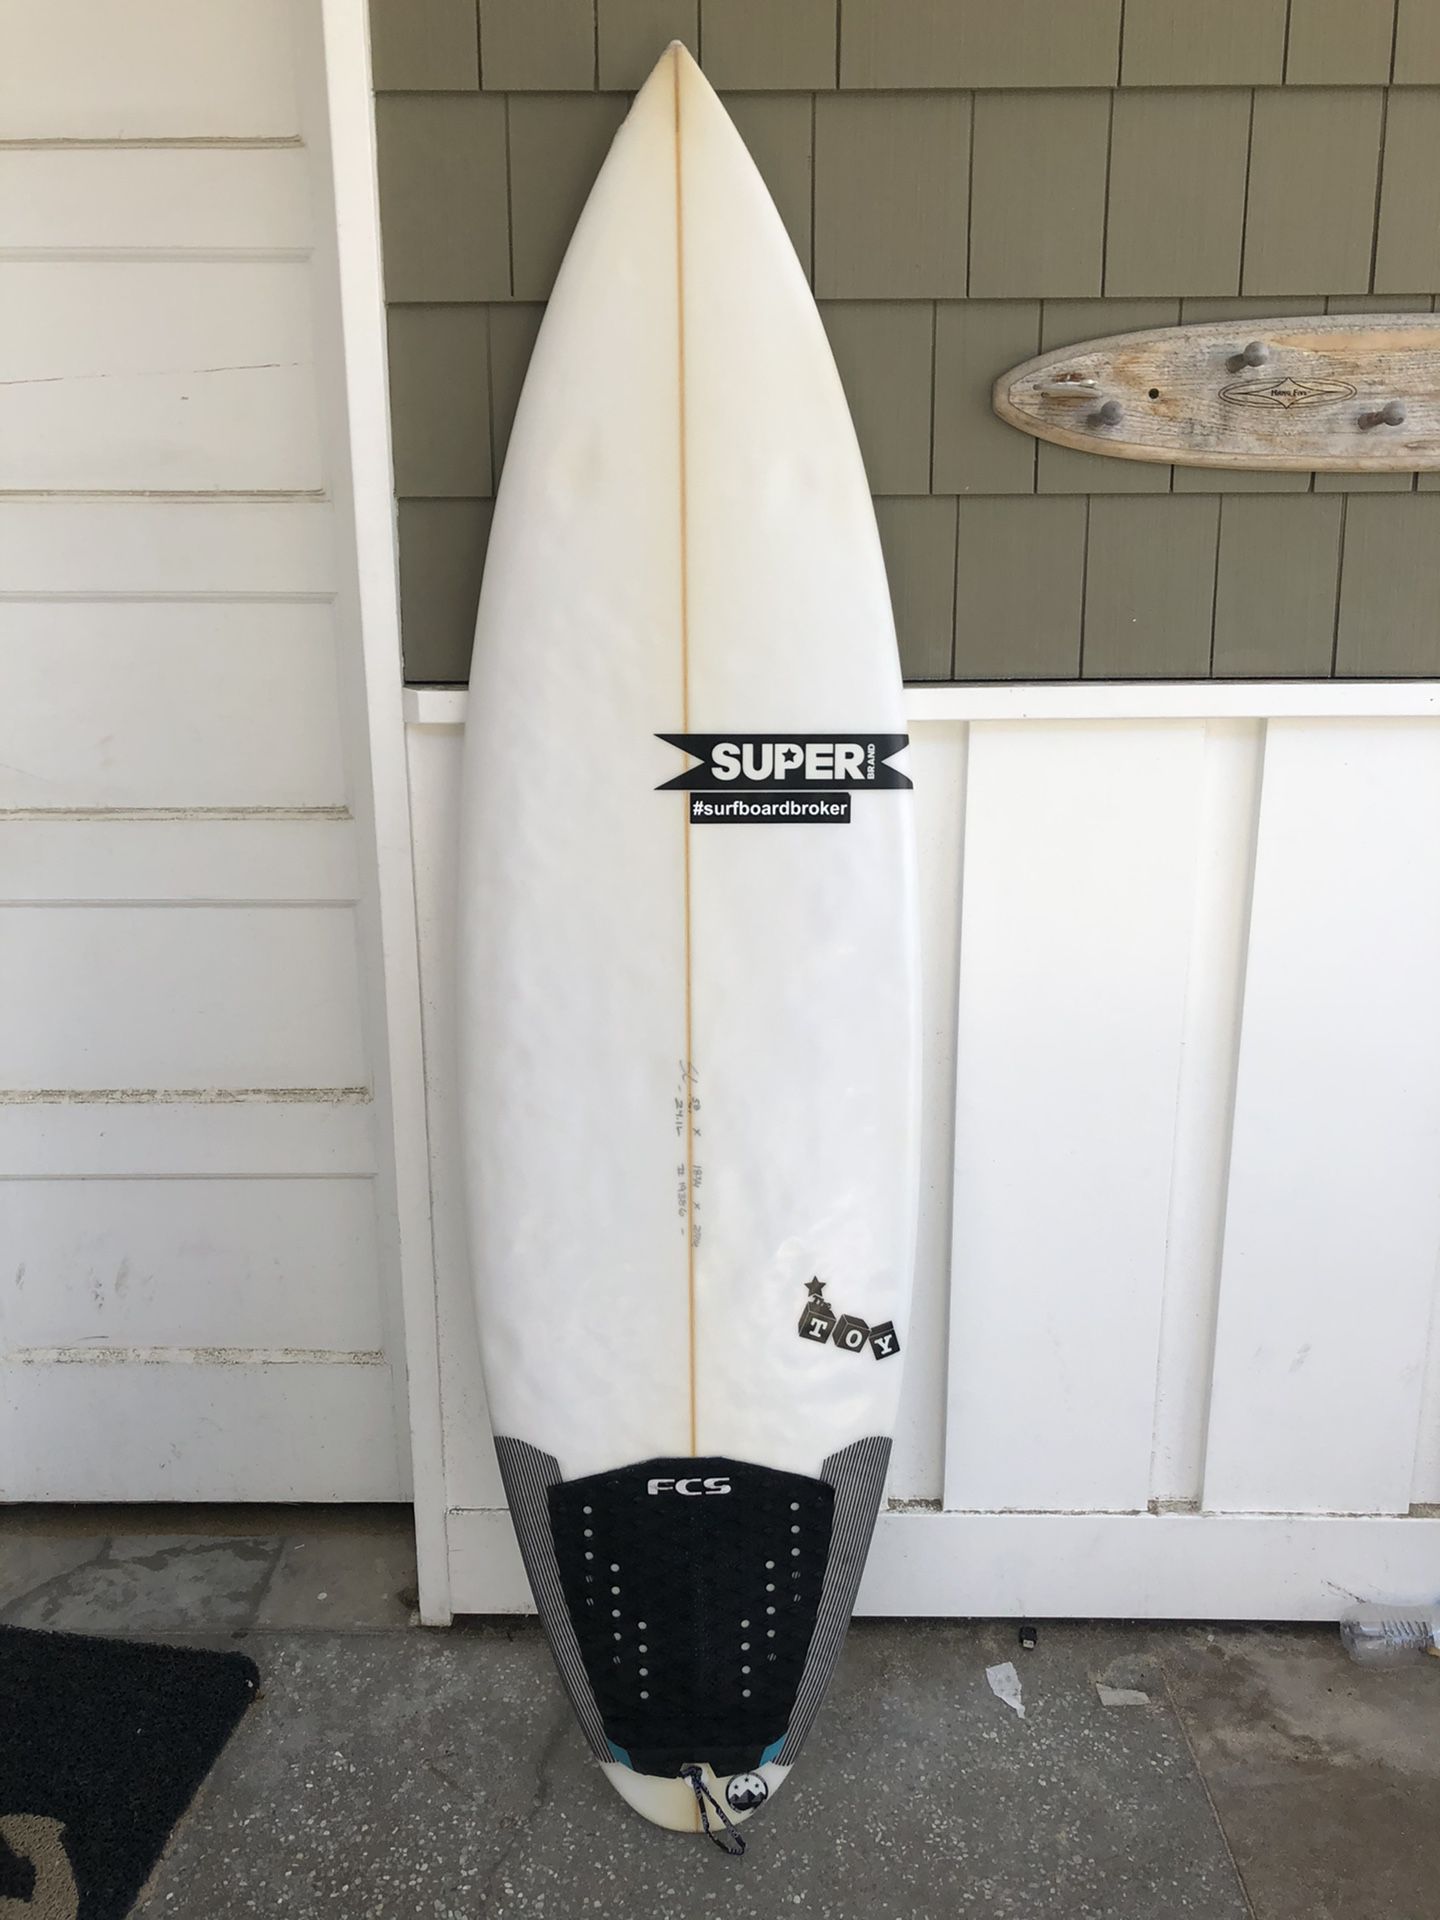 Super brand toy Surfboard